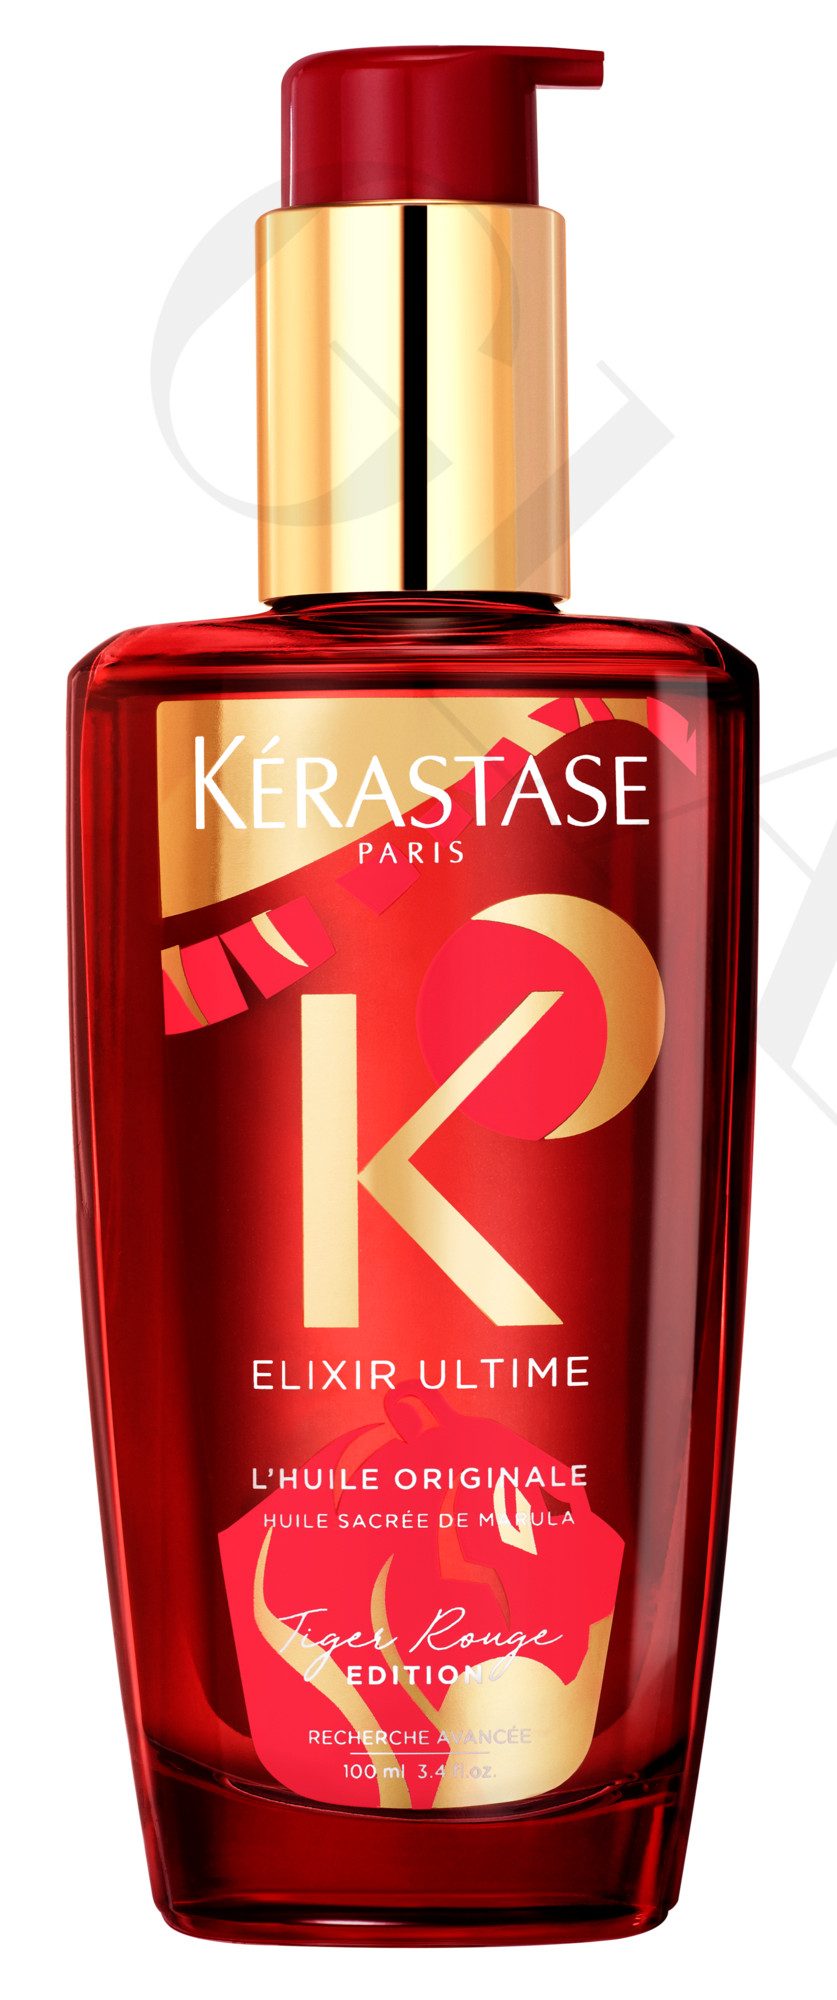 Kérastase Elixir Ultime L´huile Originale Tiger Rouge Edition